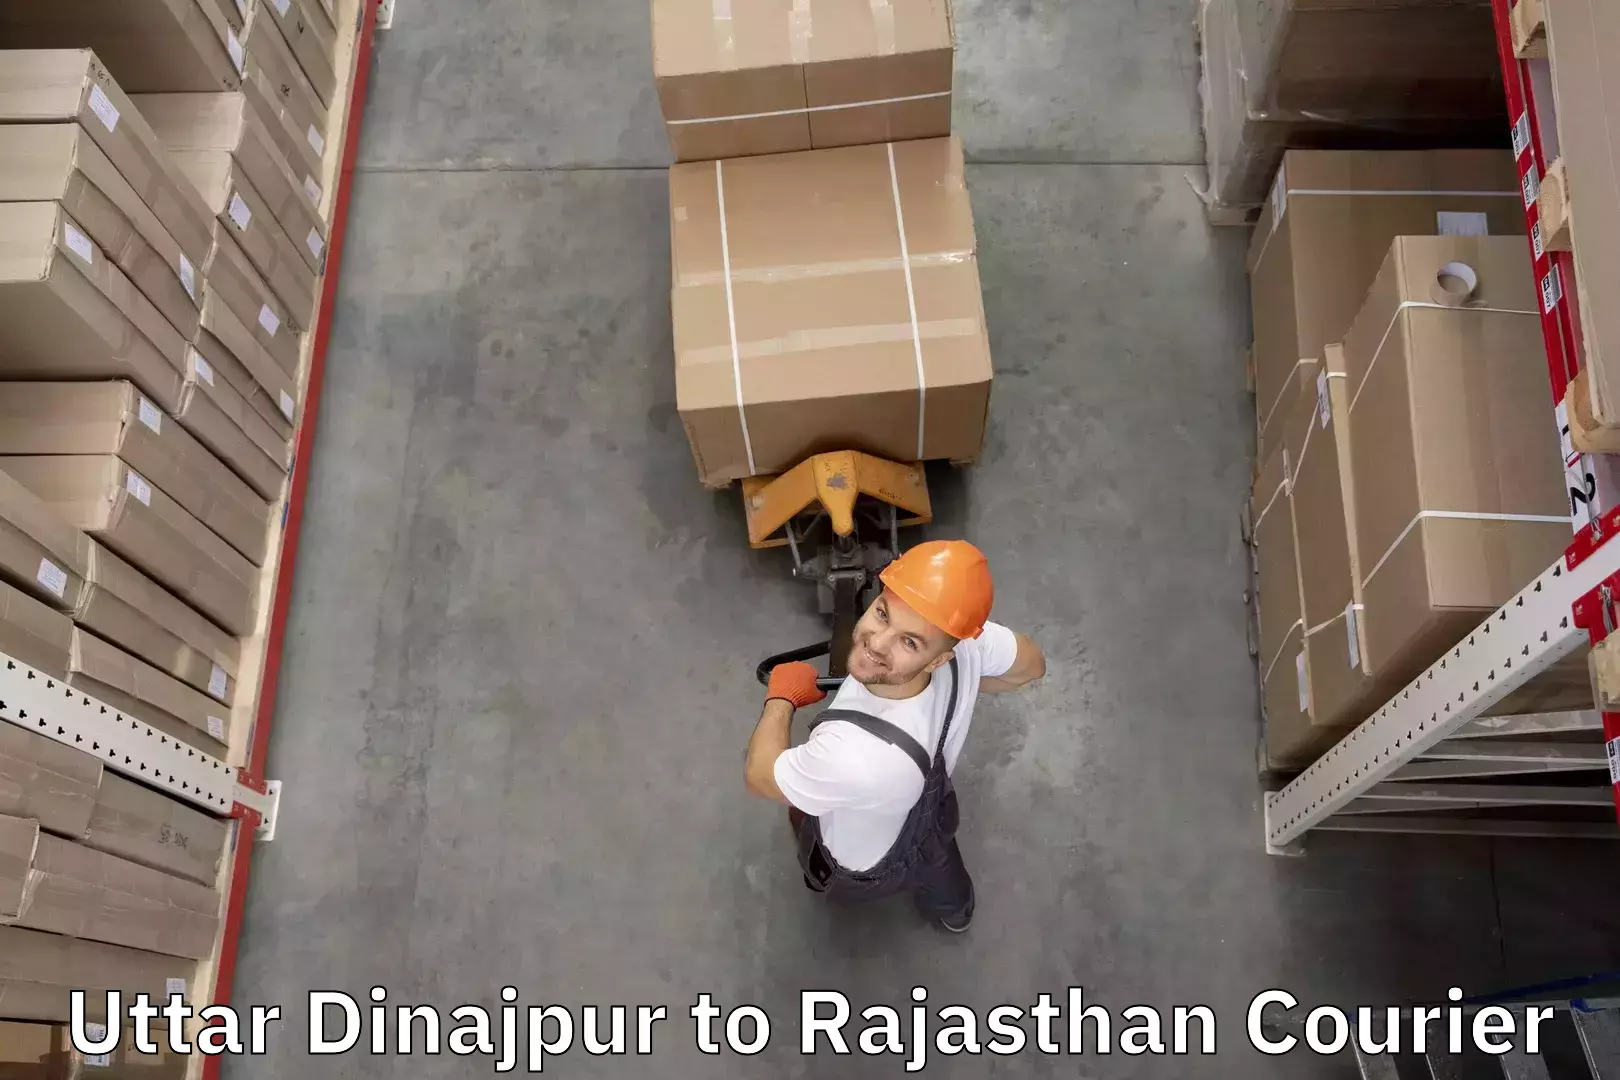 Luggage shipment tracking Uttar Dinajpur to Jhunjhunu